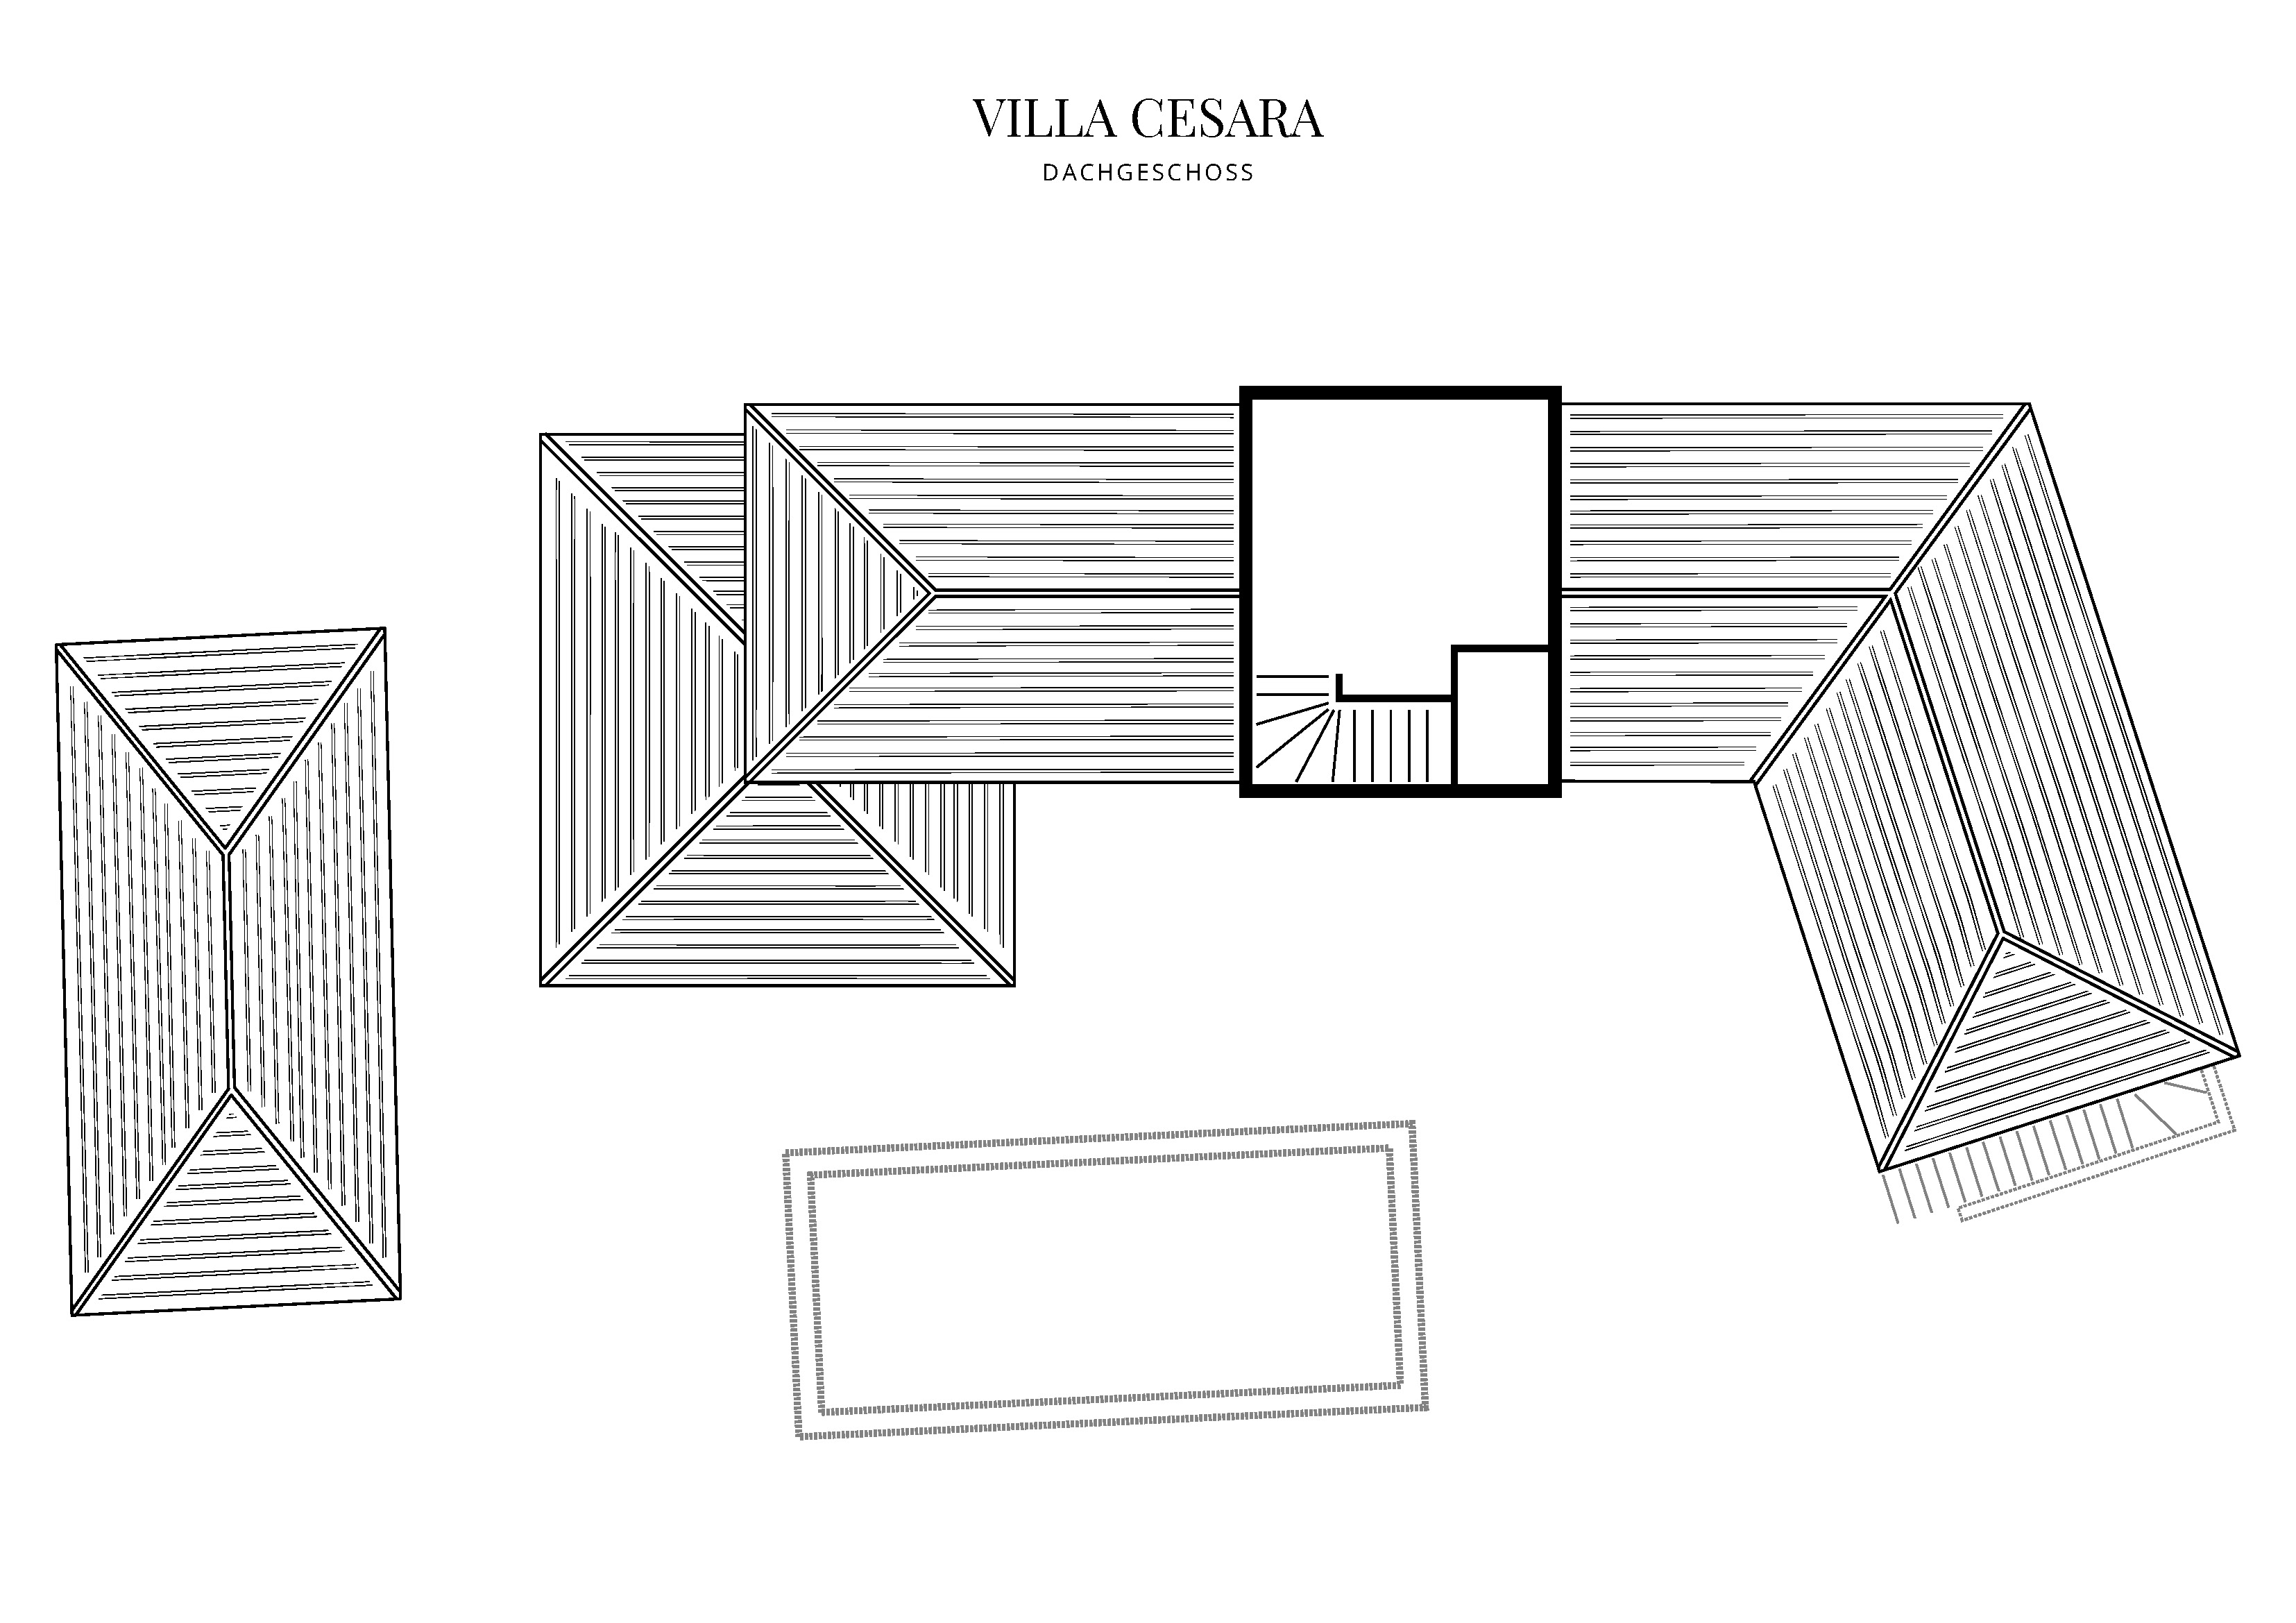 Grafik Grundriss Dachgeschoss Villa Cesara